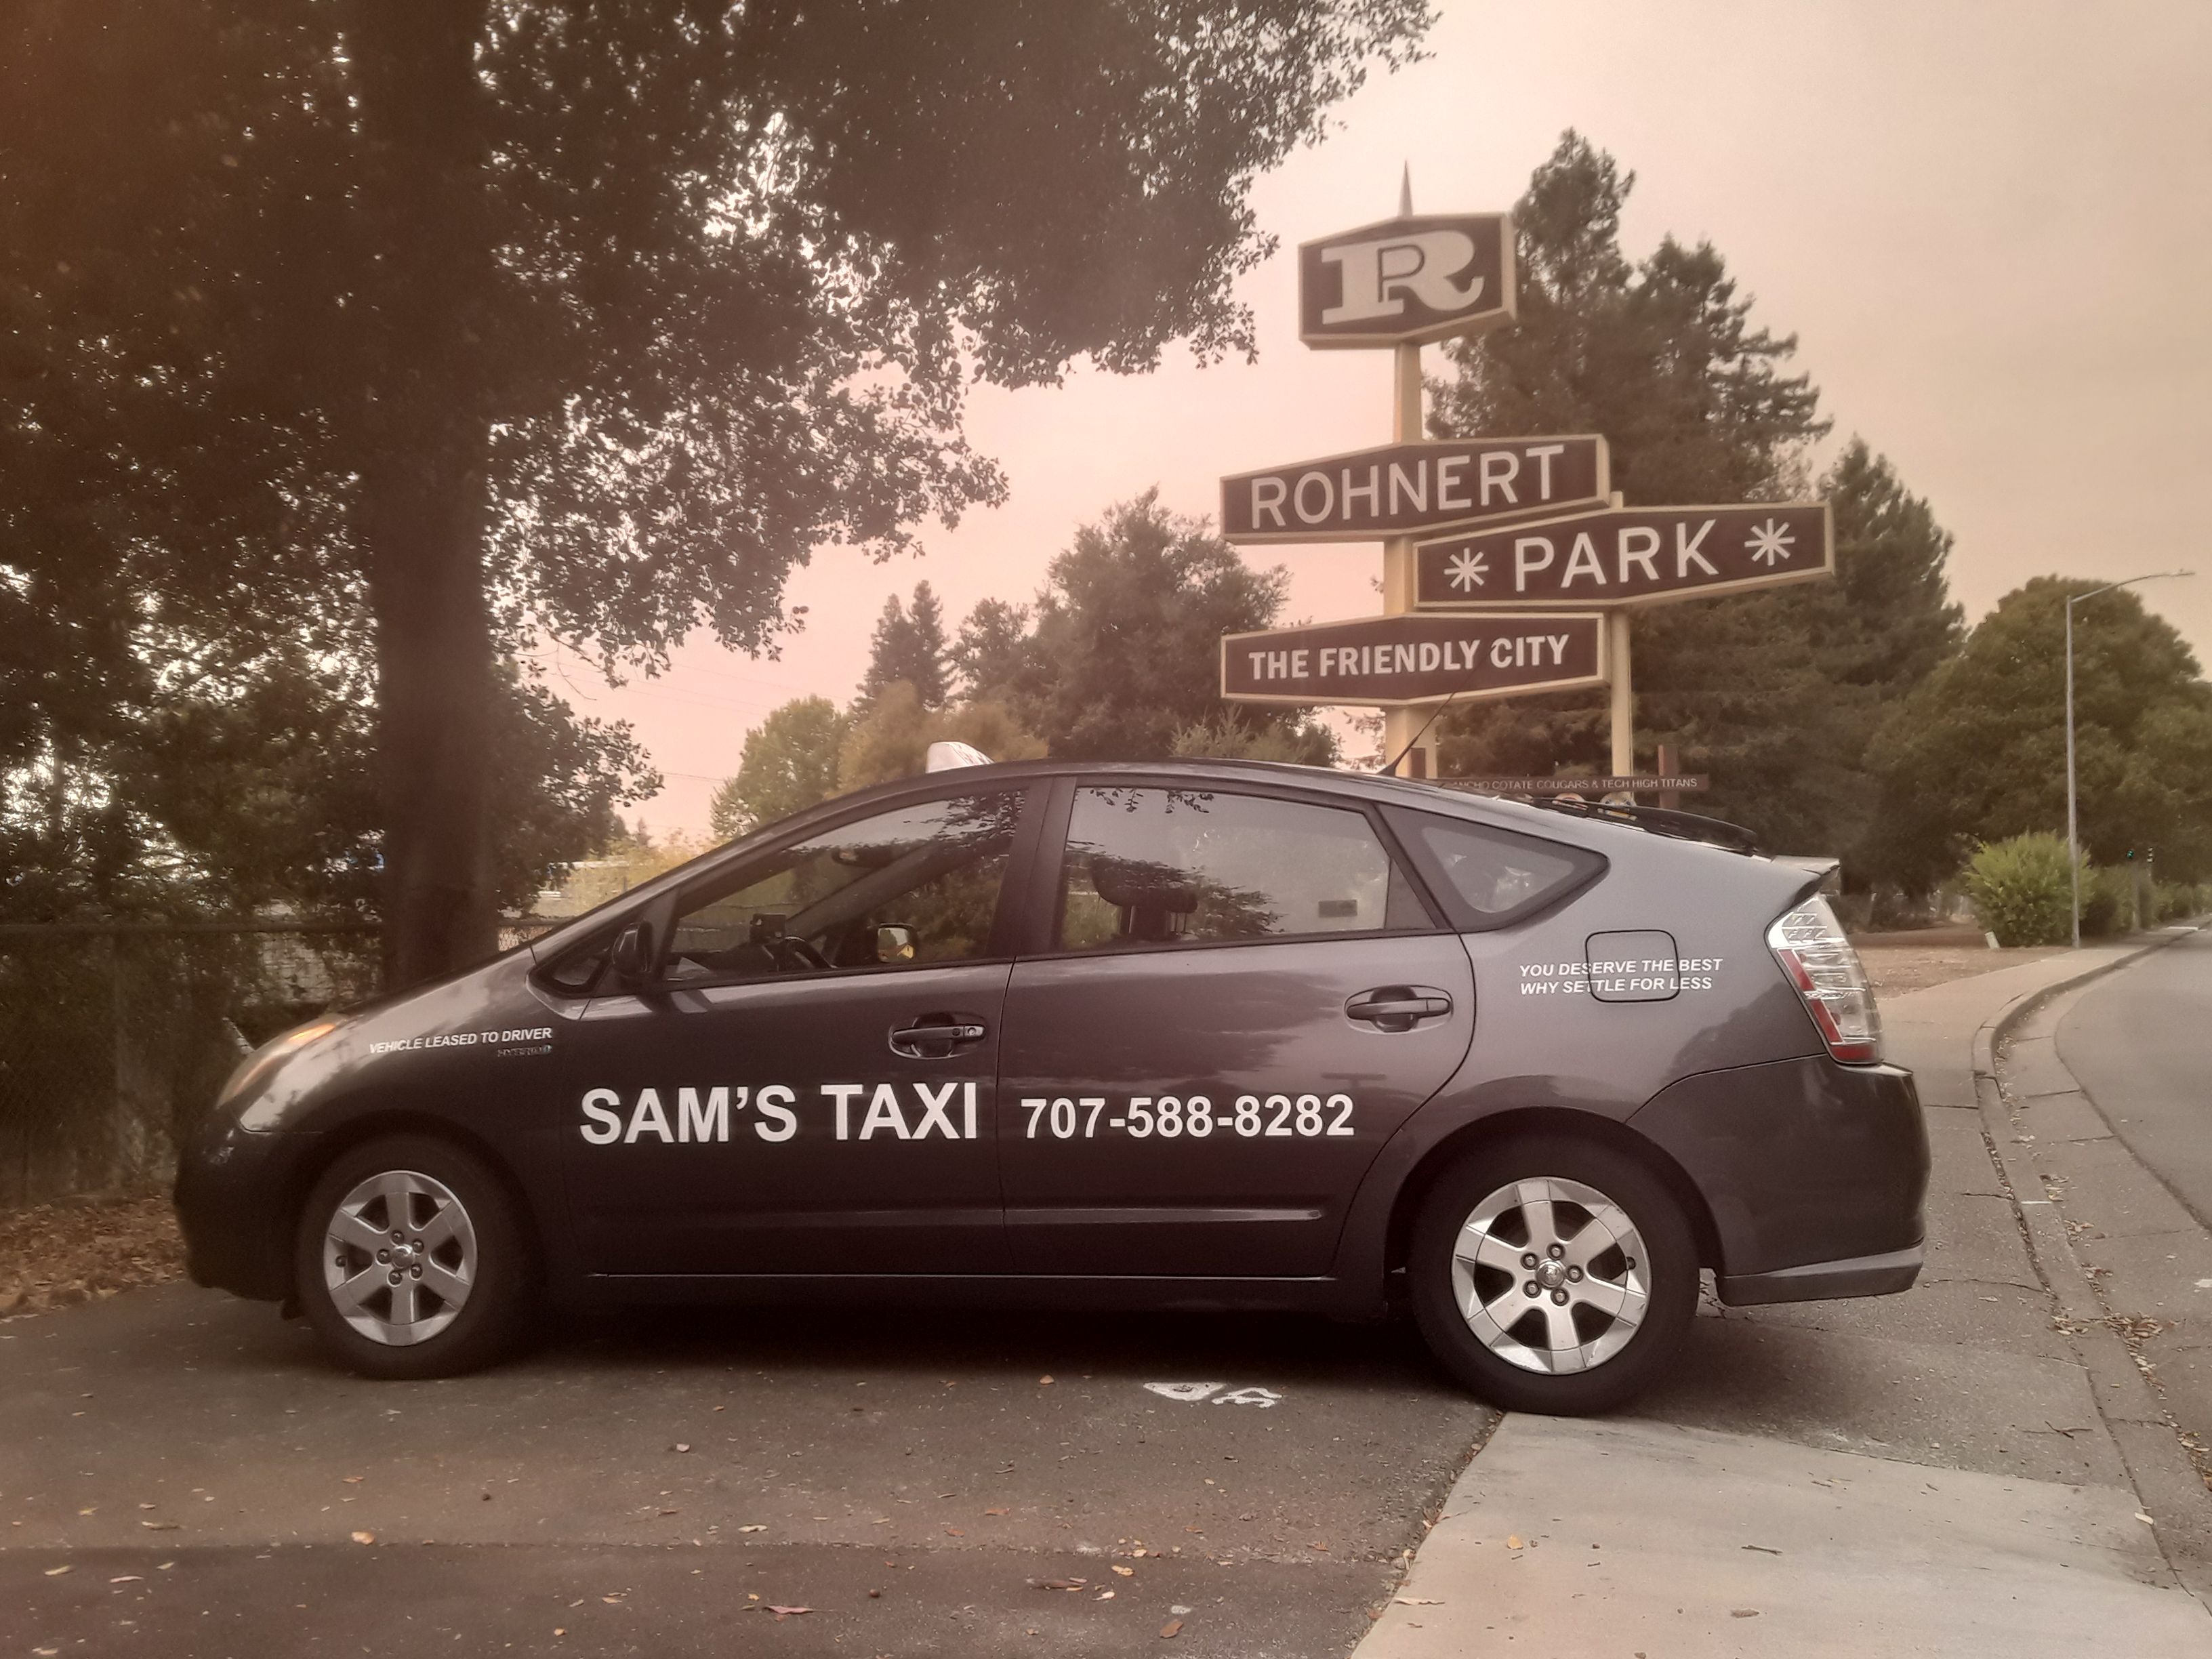 Rohnert Park Sam's Taxi Photo